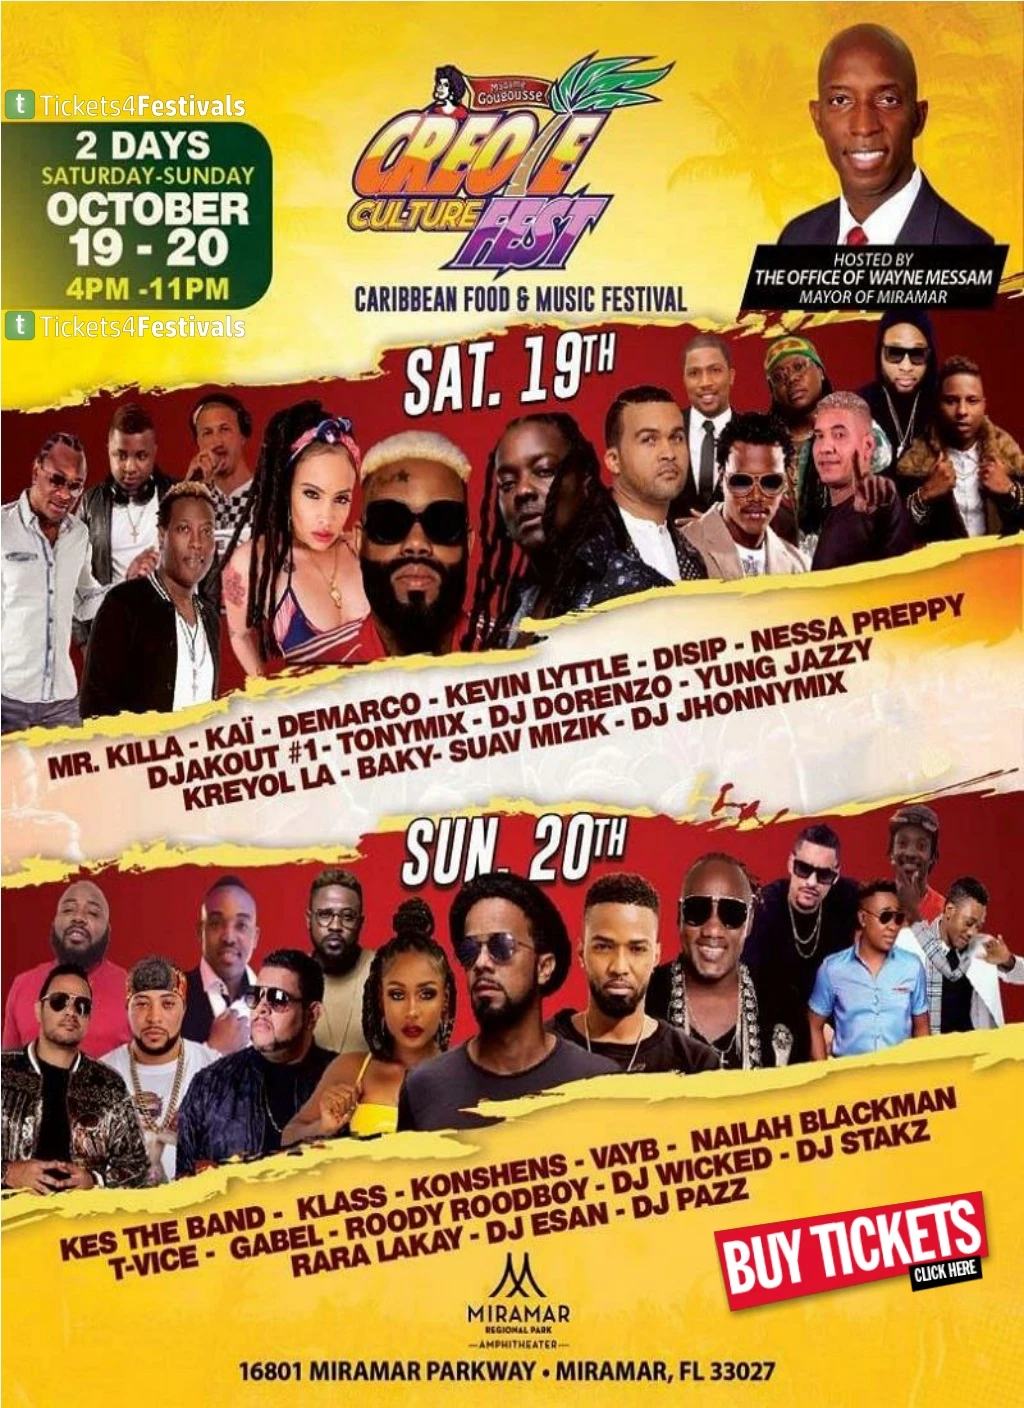 creole culture fest 2019 lineup